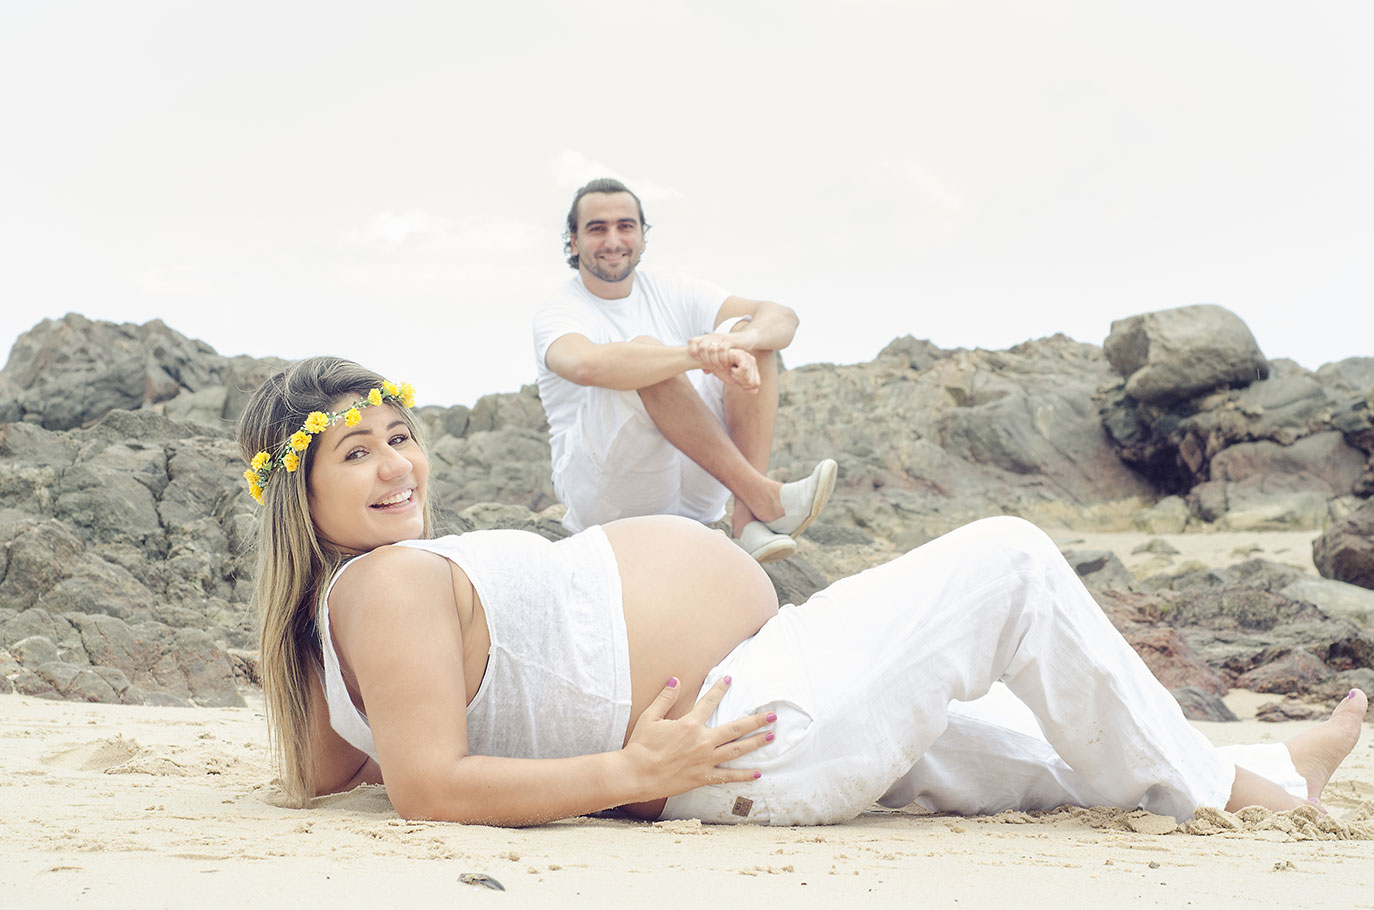 Fotografia de gestantes, grávidas - Salvador - Bahia - Mateus Lima 